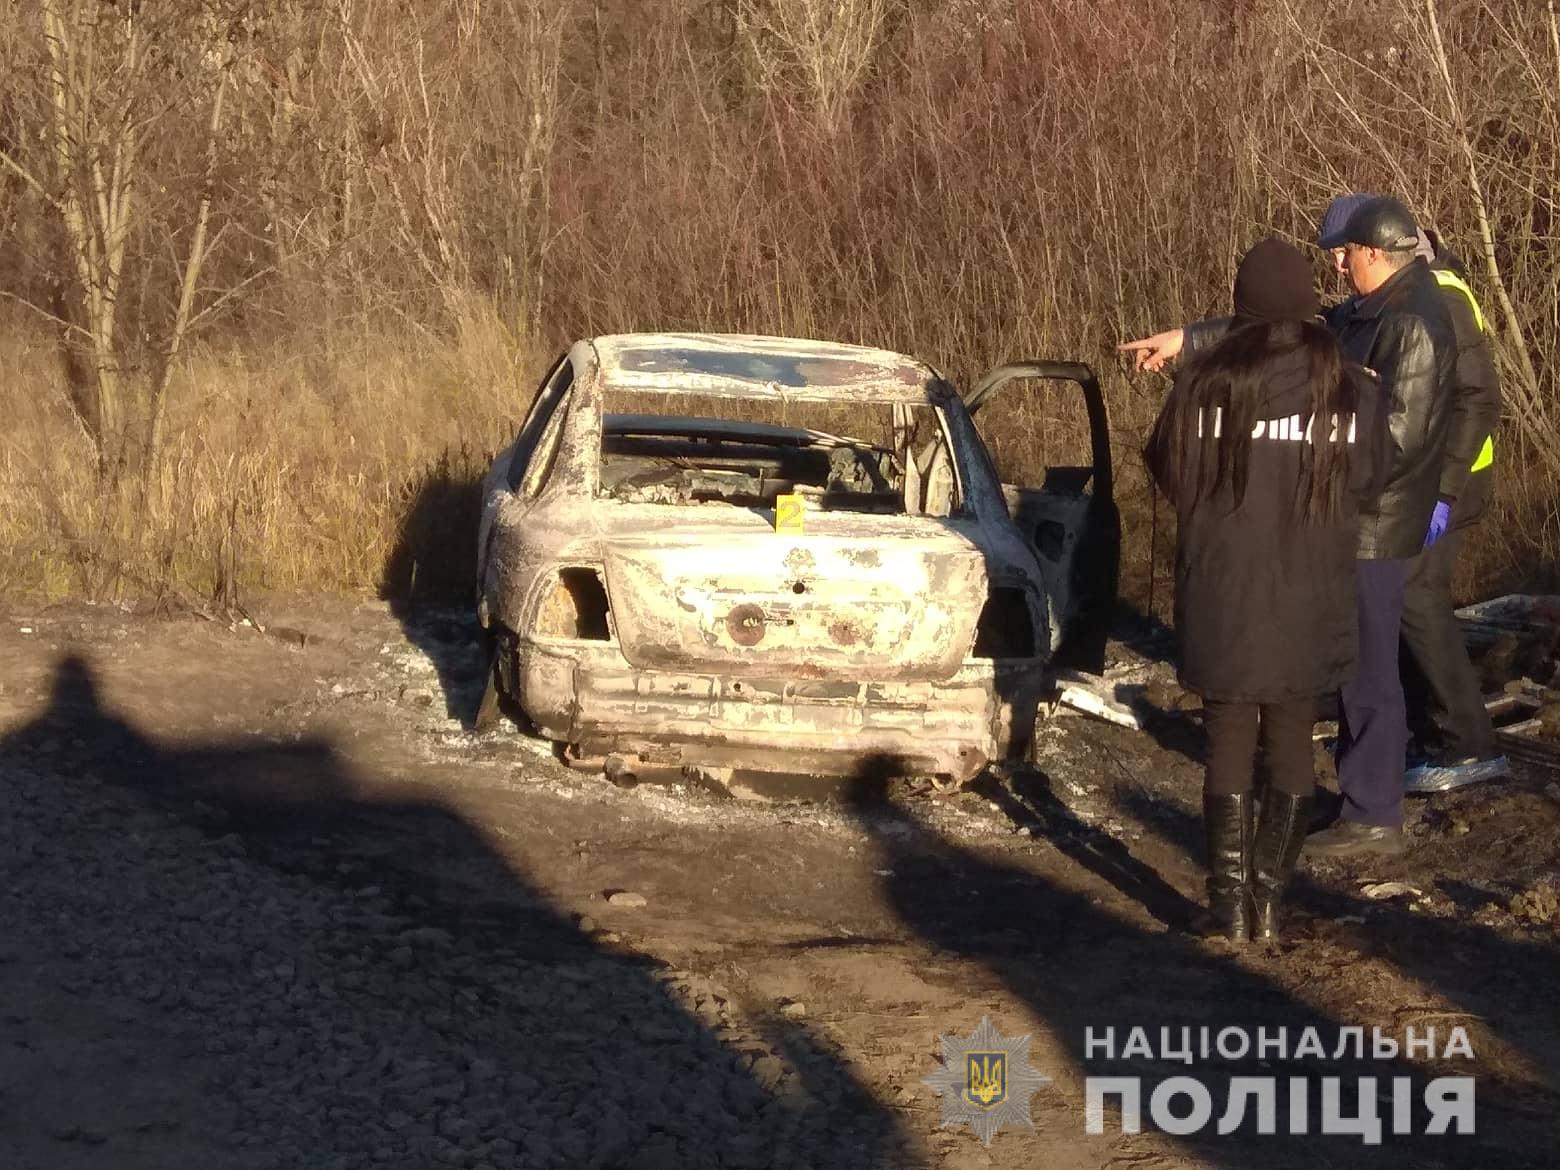 Взрыв авто в Харькове: машину подозреваемых нашли сожженной